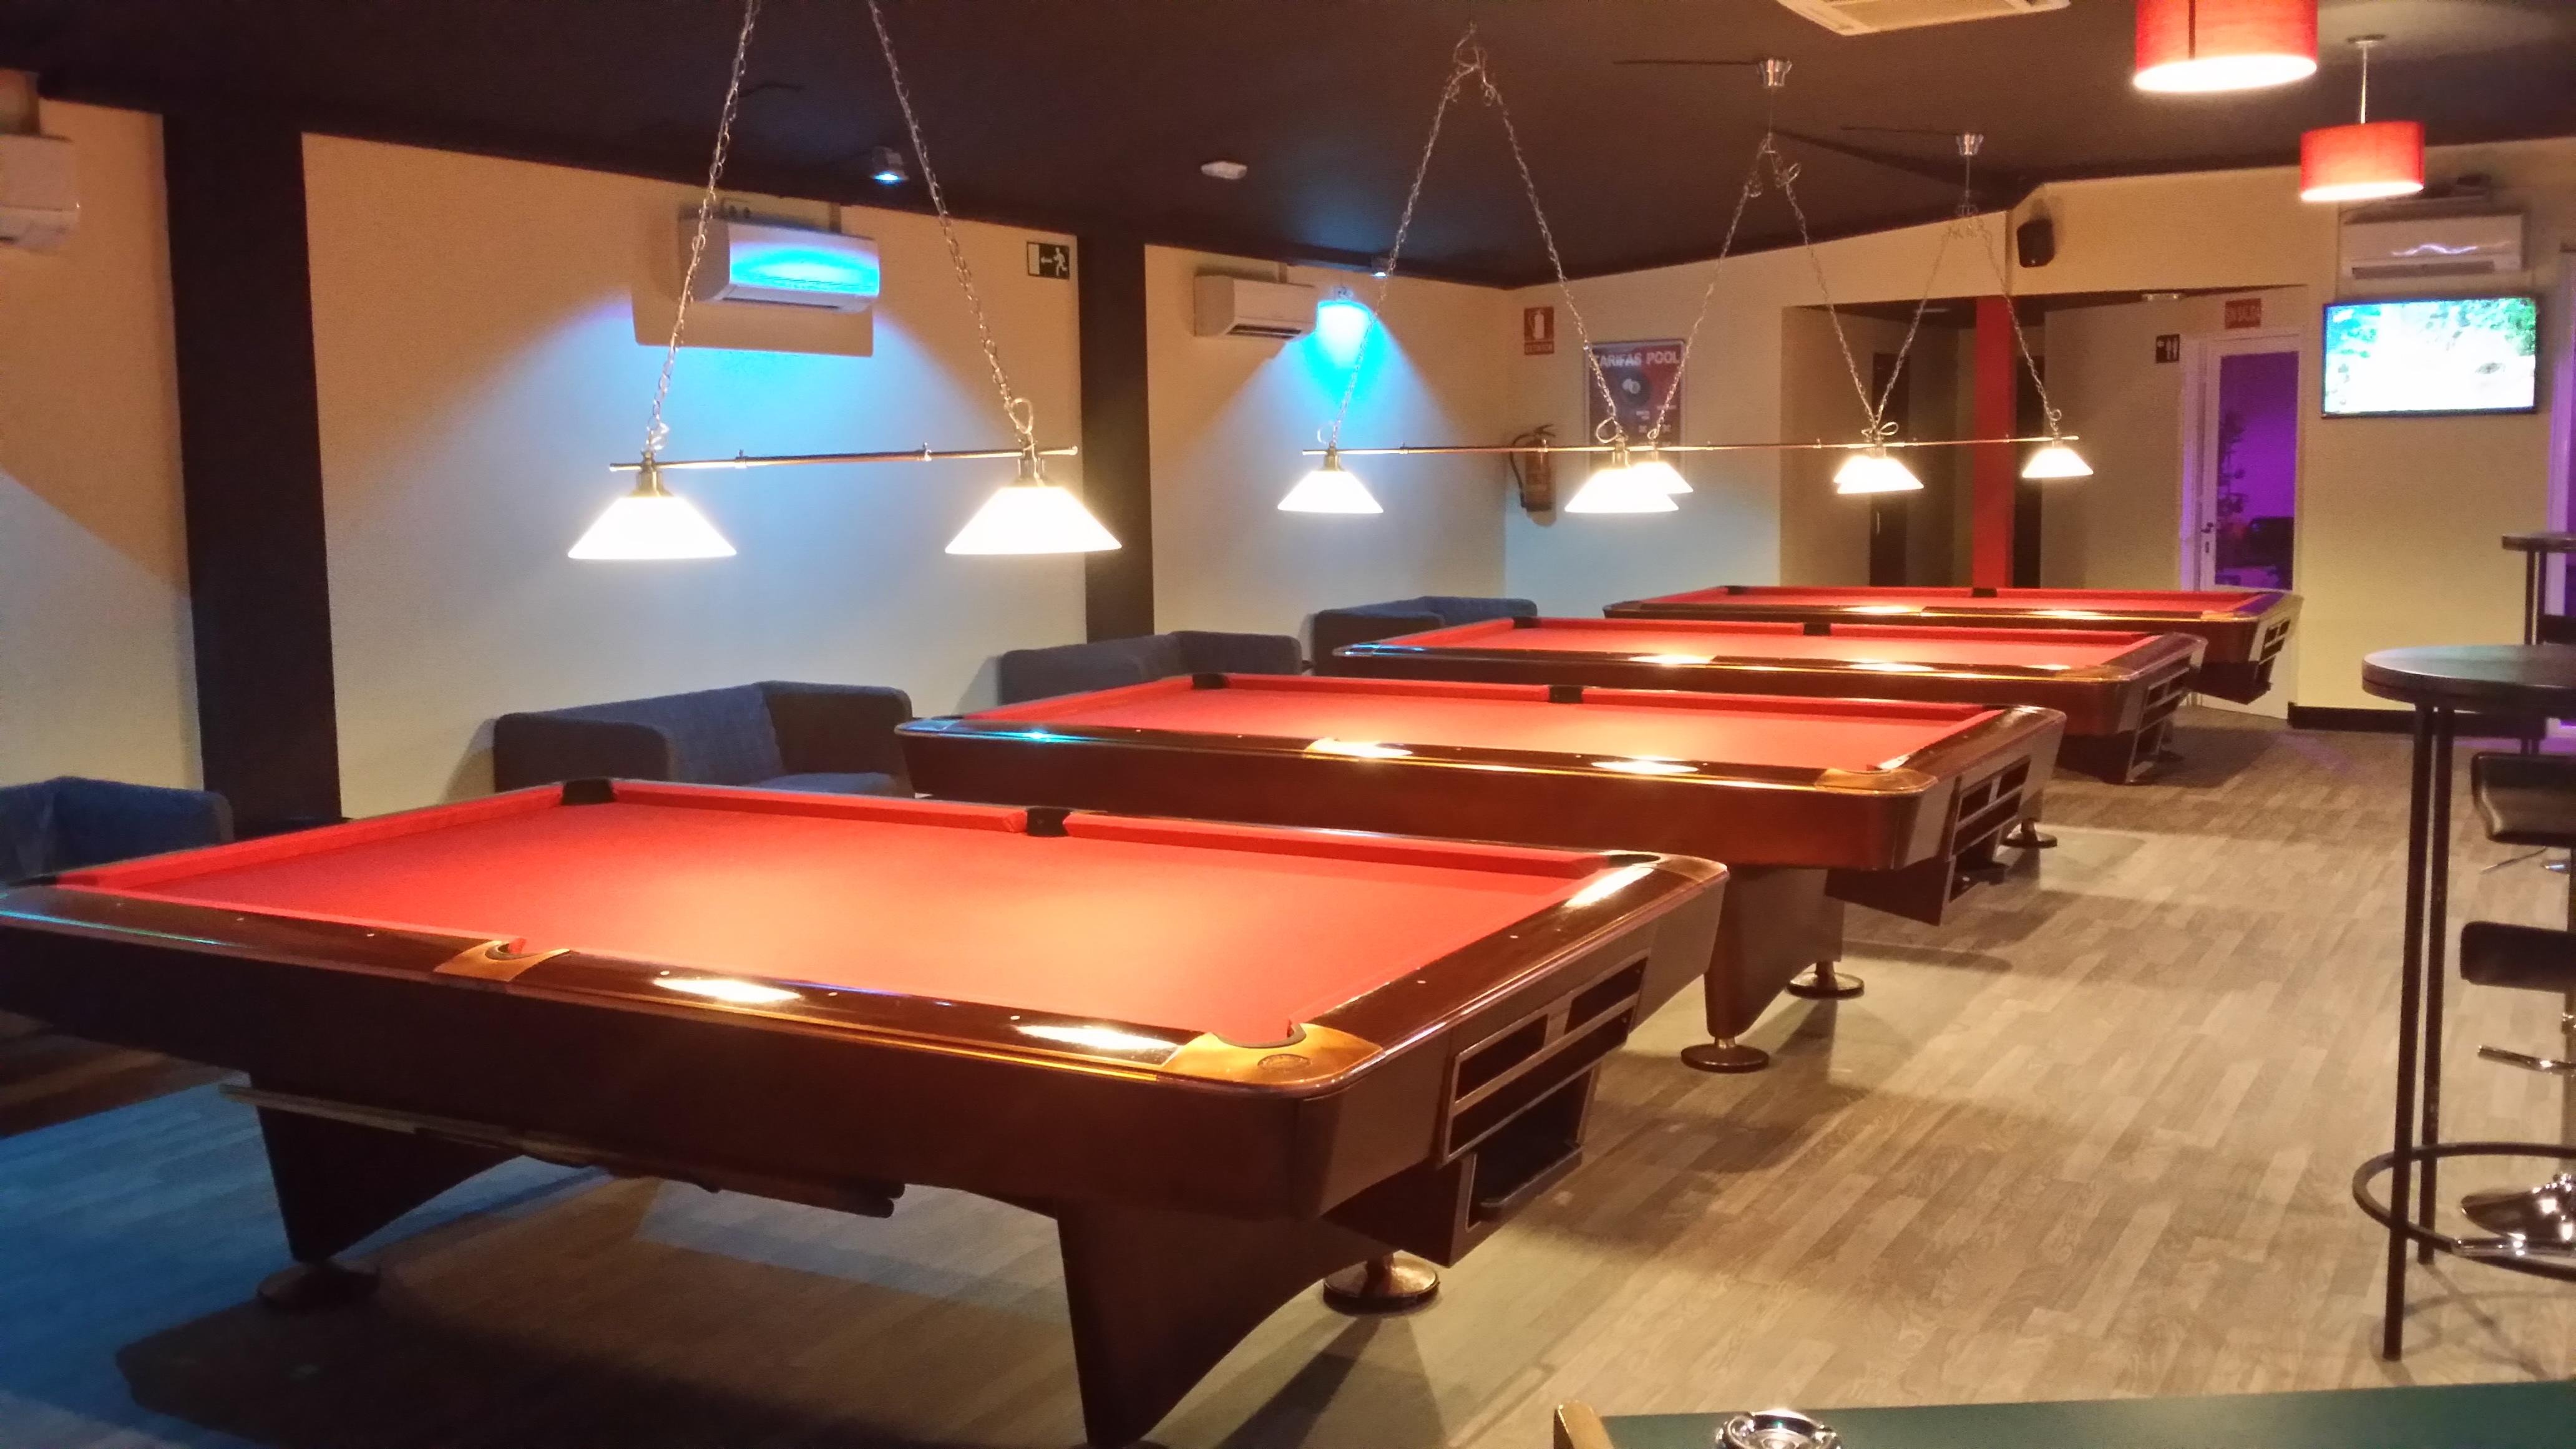 Shooters pool lounge & pub en Alcalá de Henares: 1 opiniones y 9 fotos